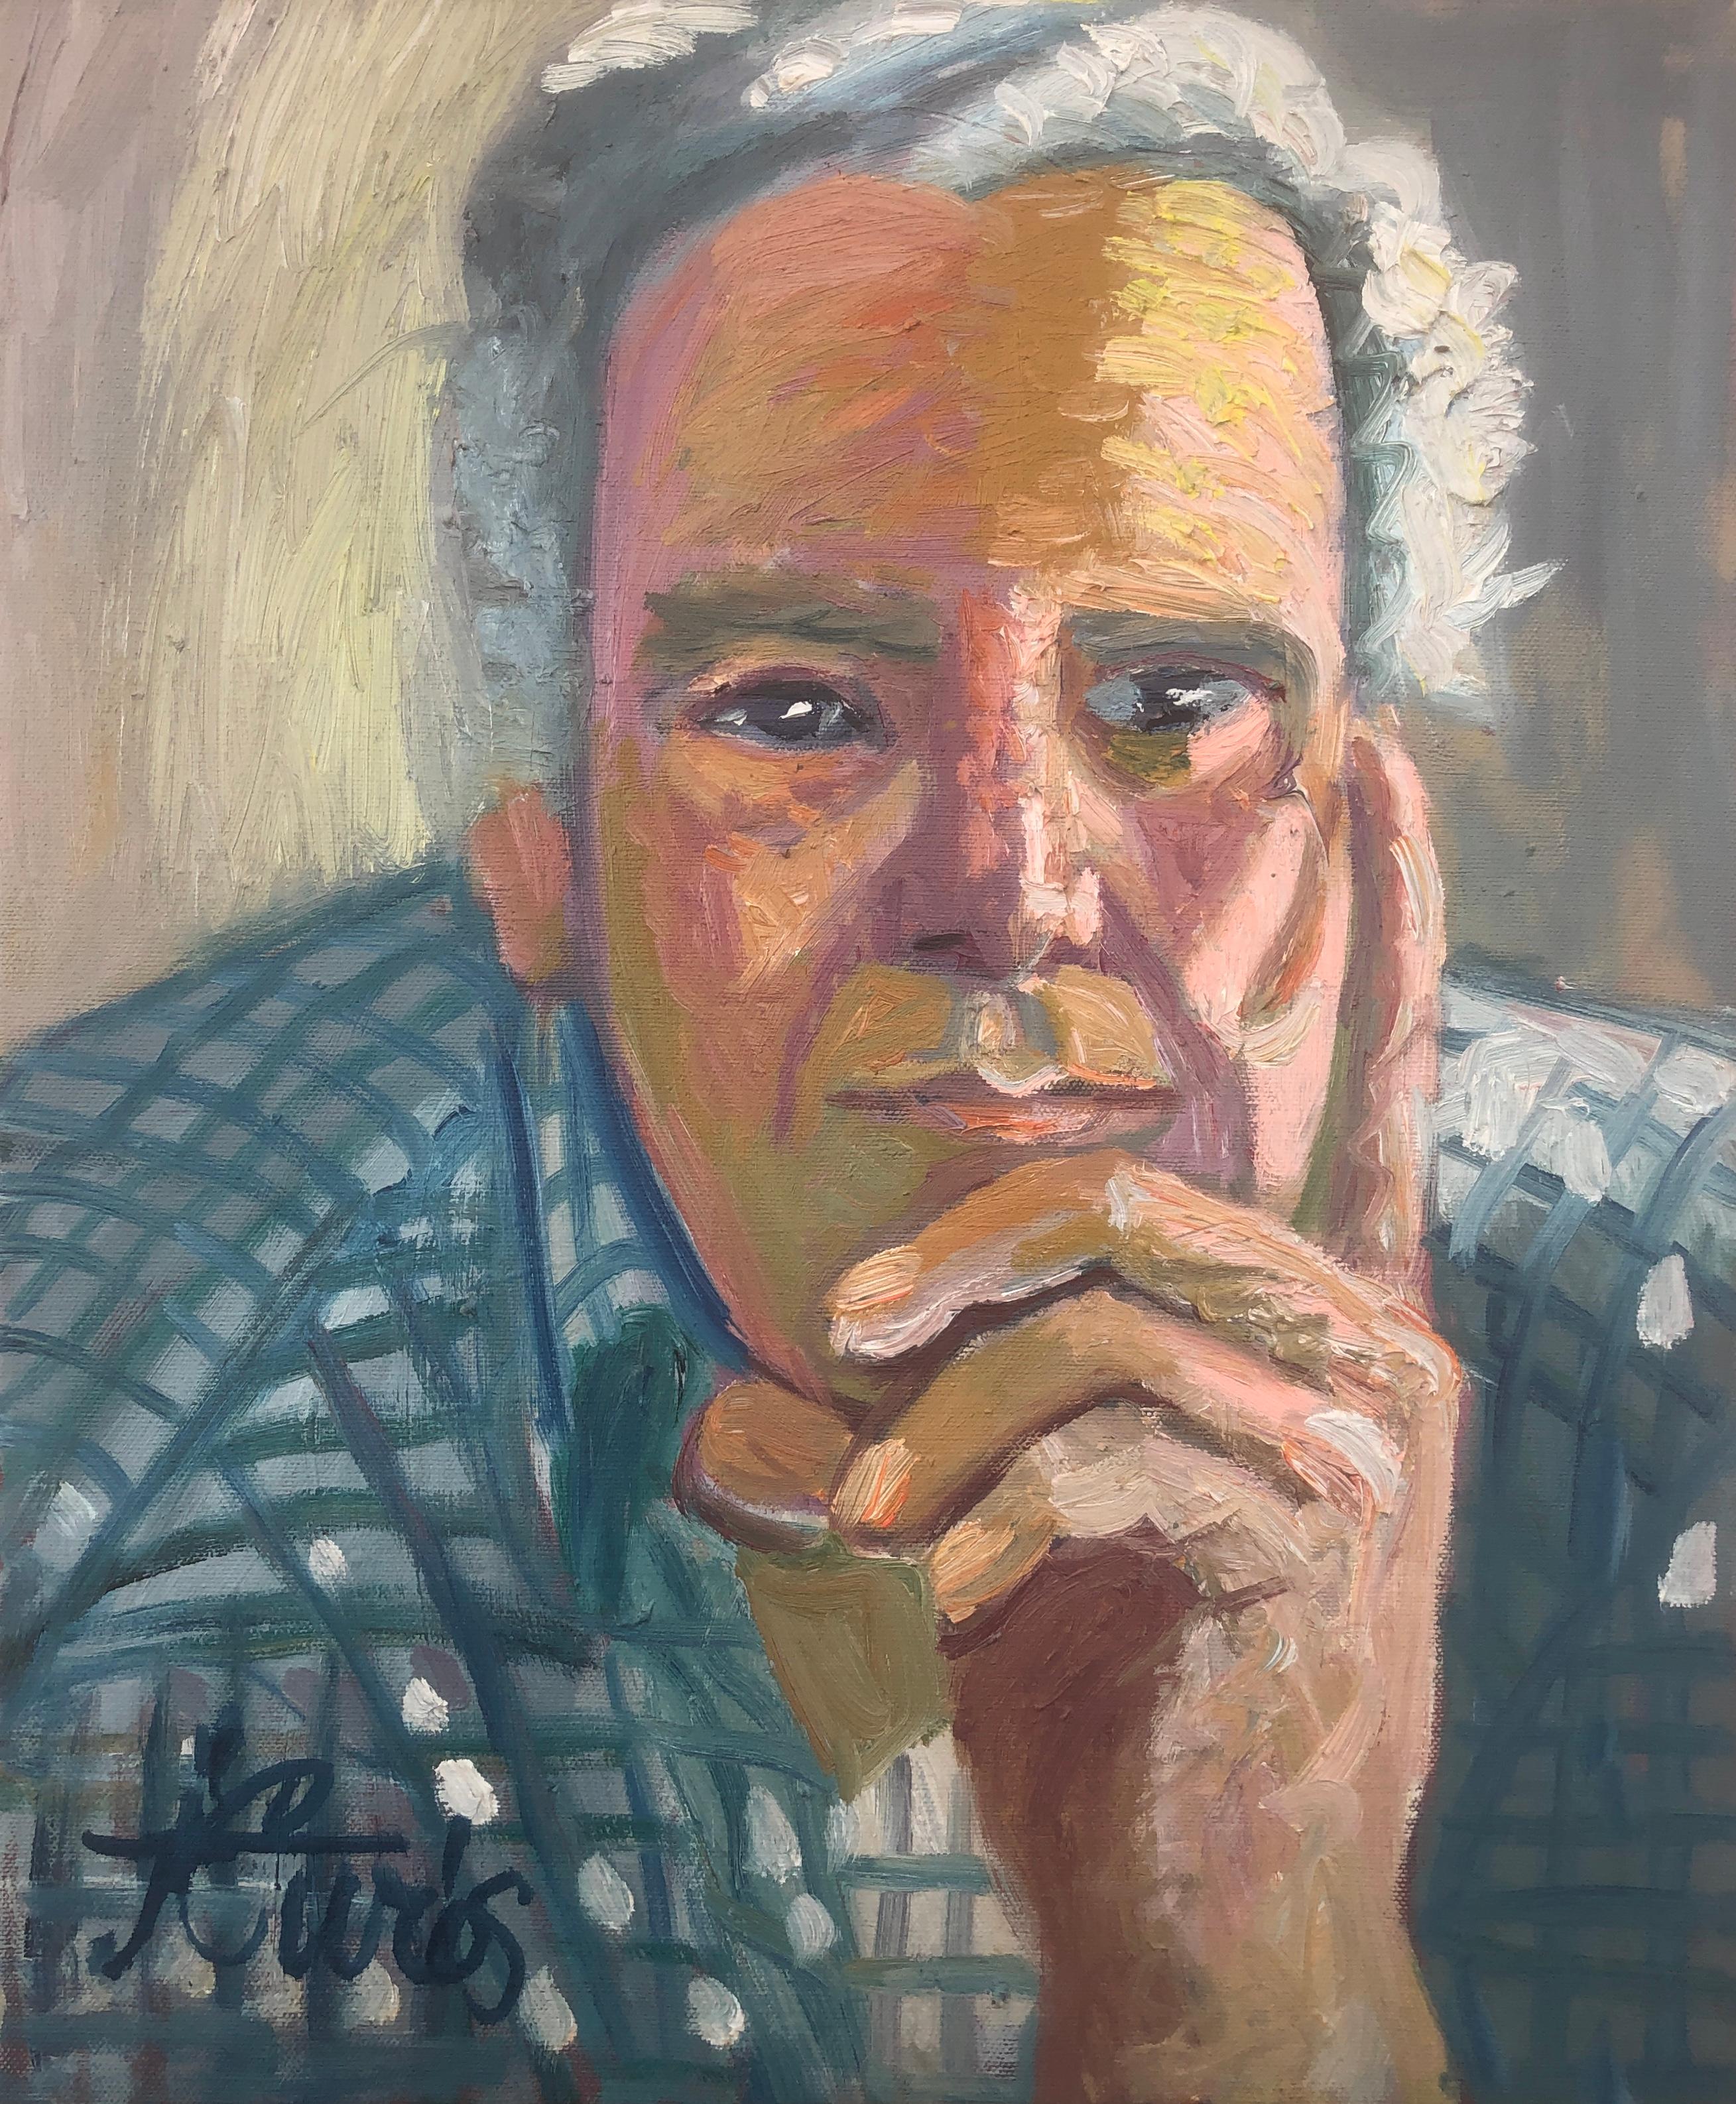 Jordi Curos Portrait Painting - Man portrait oil on canvas painting